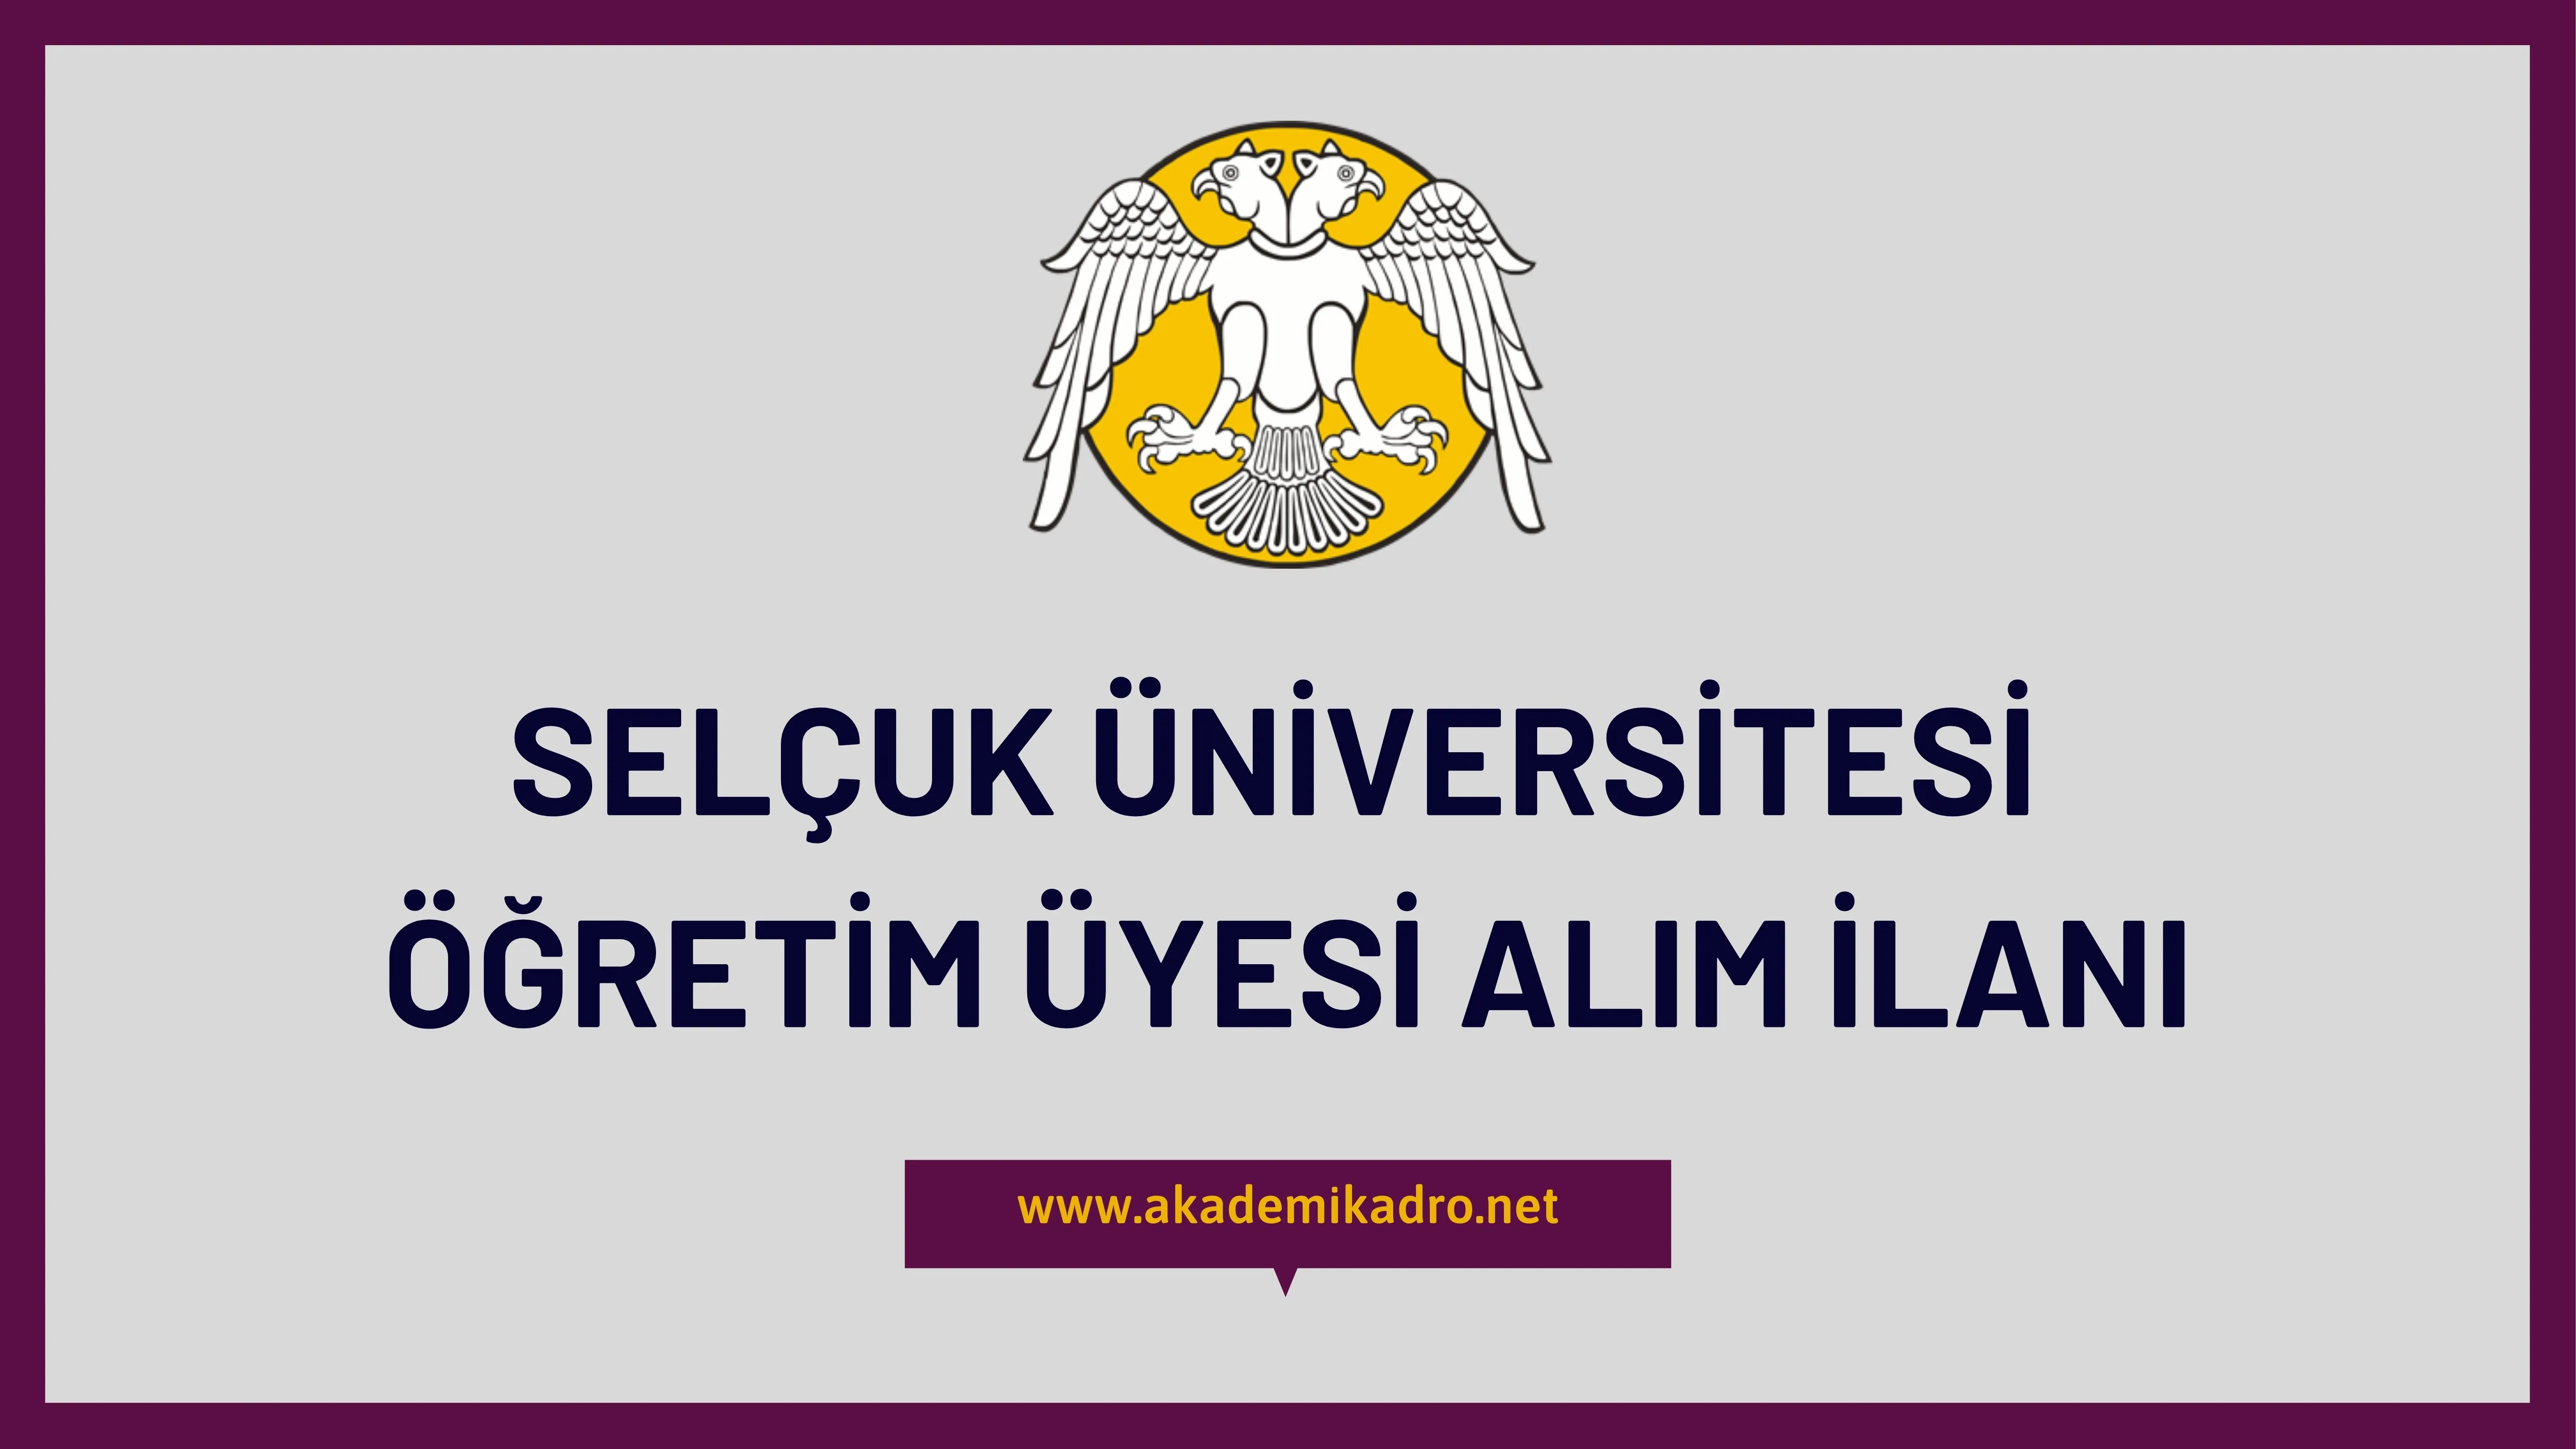 Selçuk Üniversitesi birçok alandan 109 Öğretim üyesi alacak. 